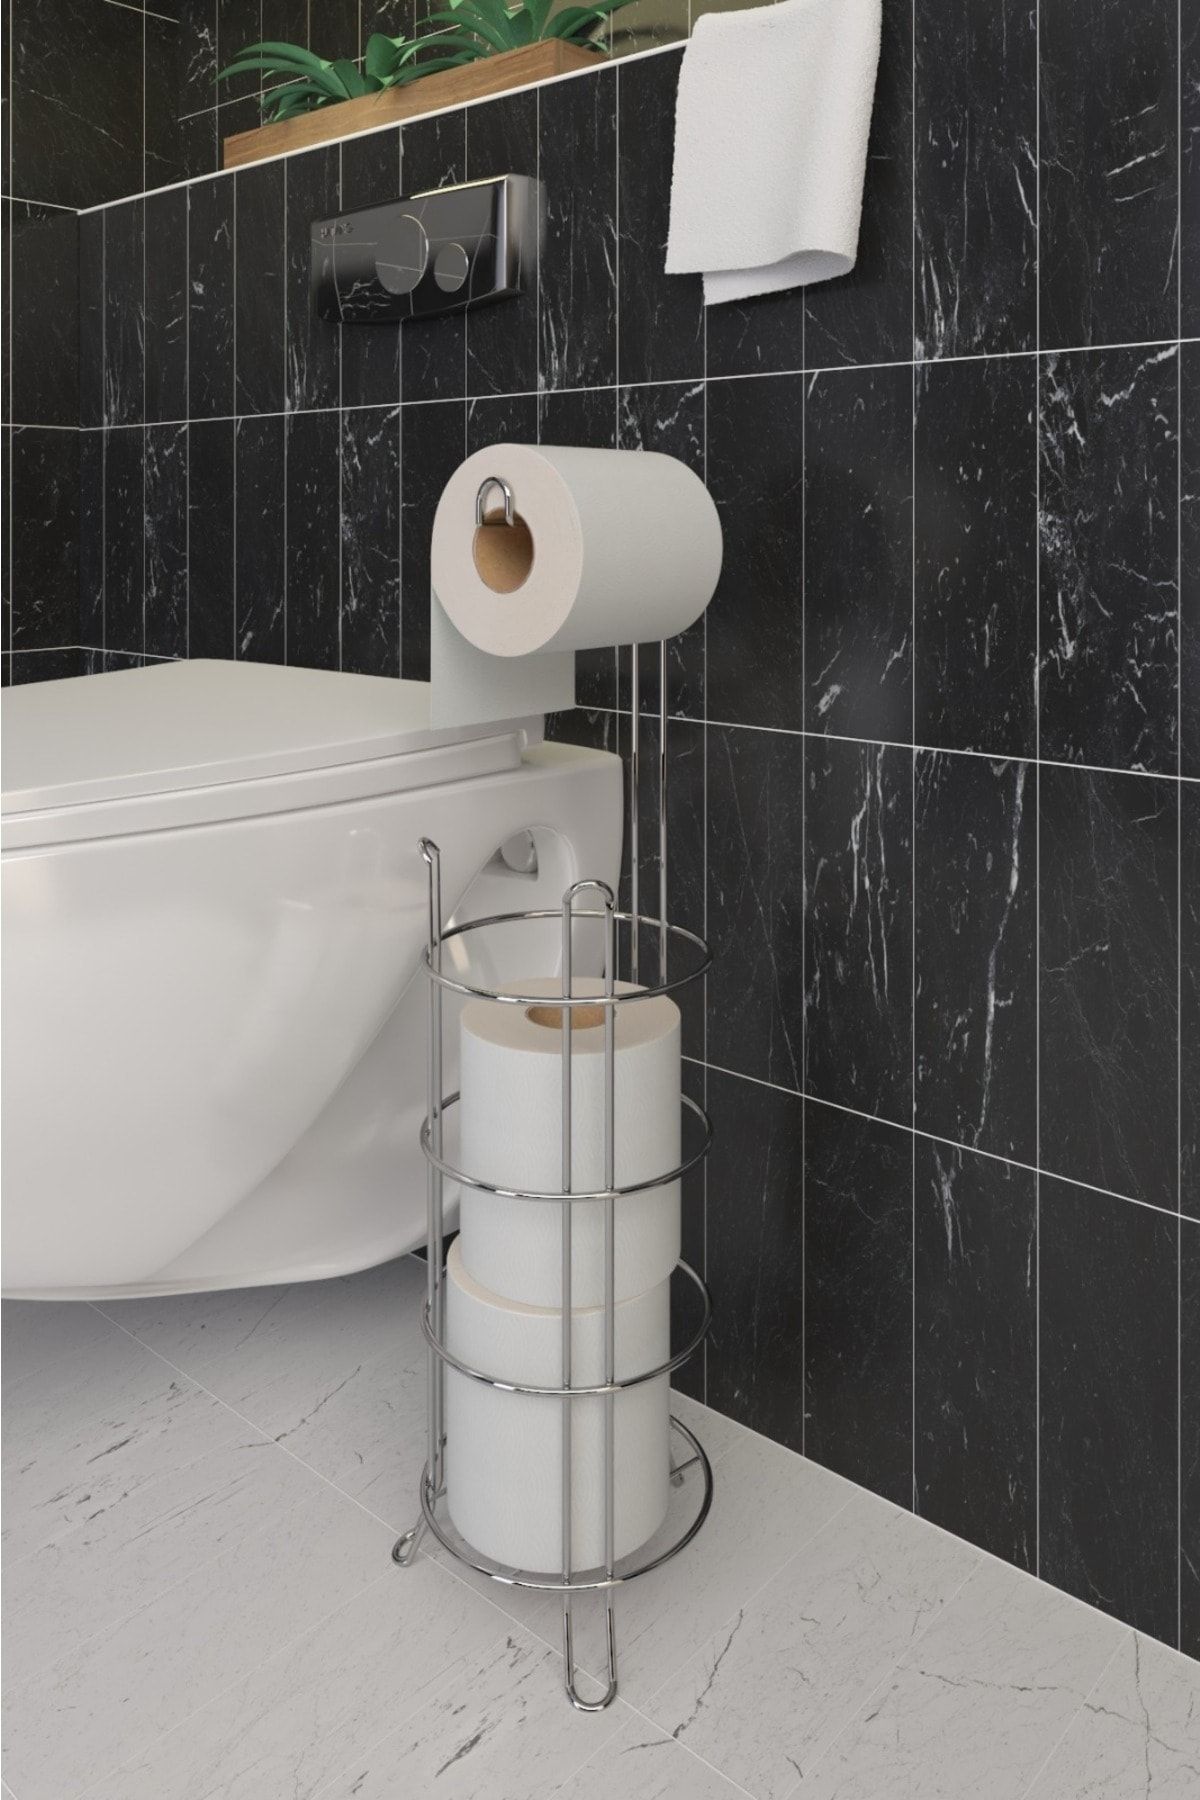 SUNTEL BANYO MUTFAK AKSESUARLARI Tuvalet Kağıtlık Wc Kağıtlığı Tuvalet Kağıdı Standı Yedekli Tuvalet Kağıt Askısı